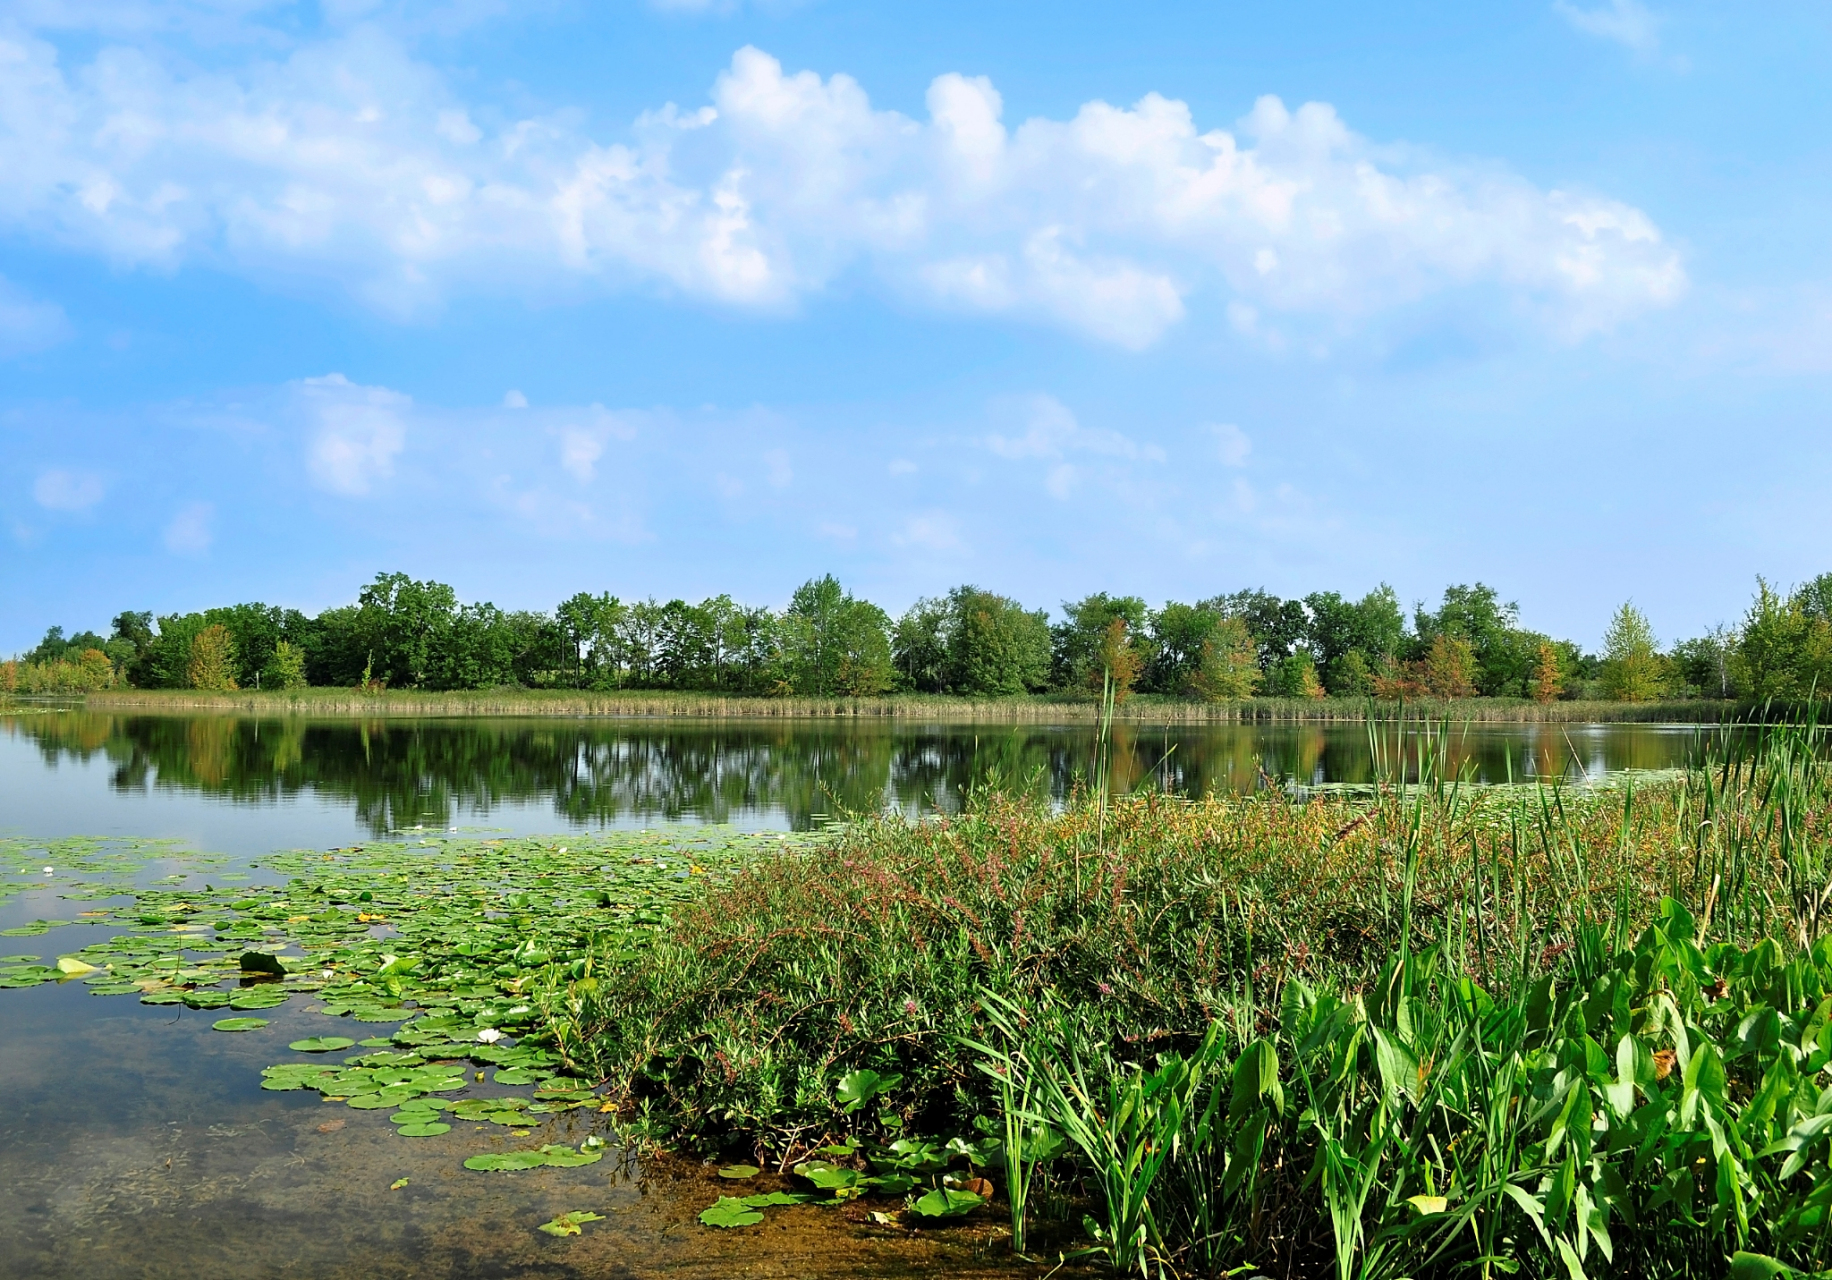 这家公园可是中国江苏涛湖和杭州西溪国家湿地公园之后的第一家被国家